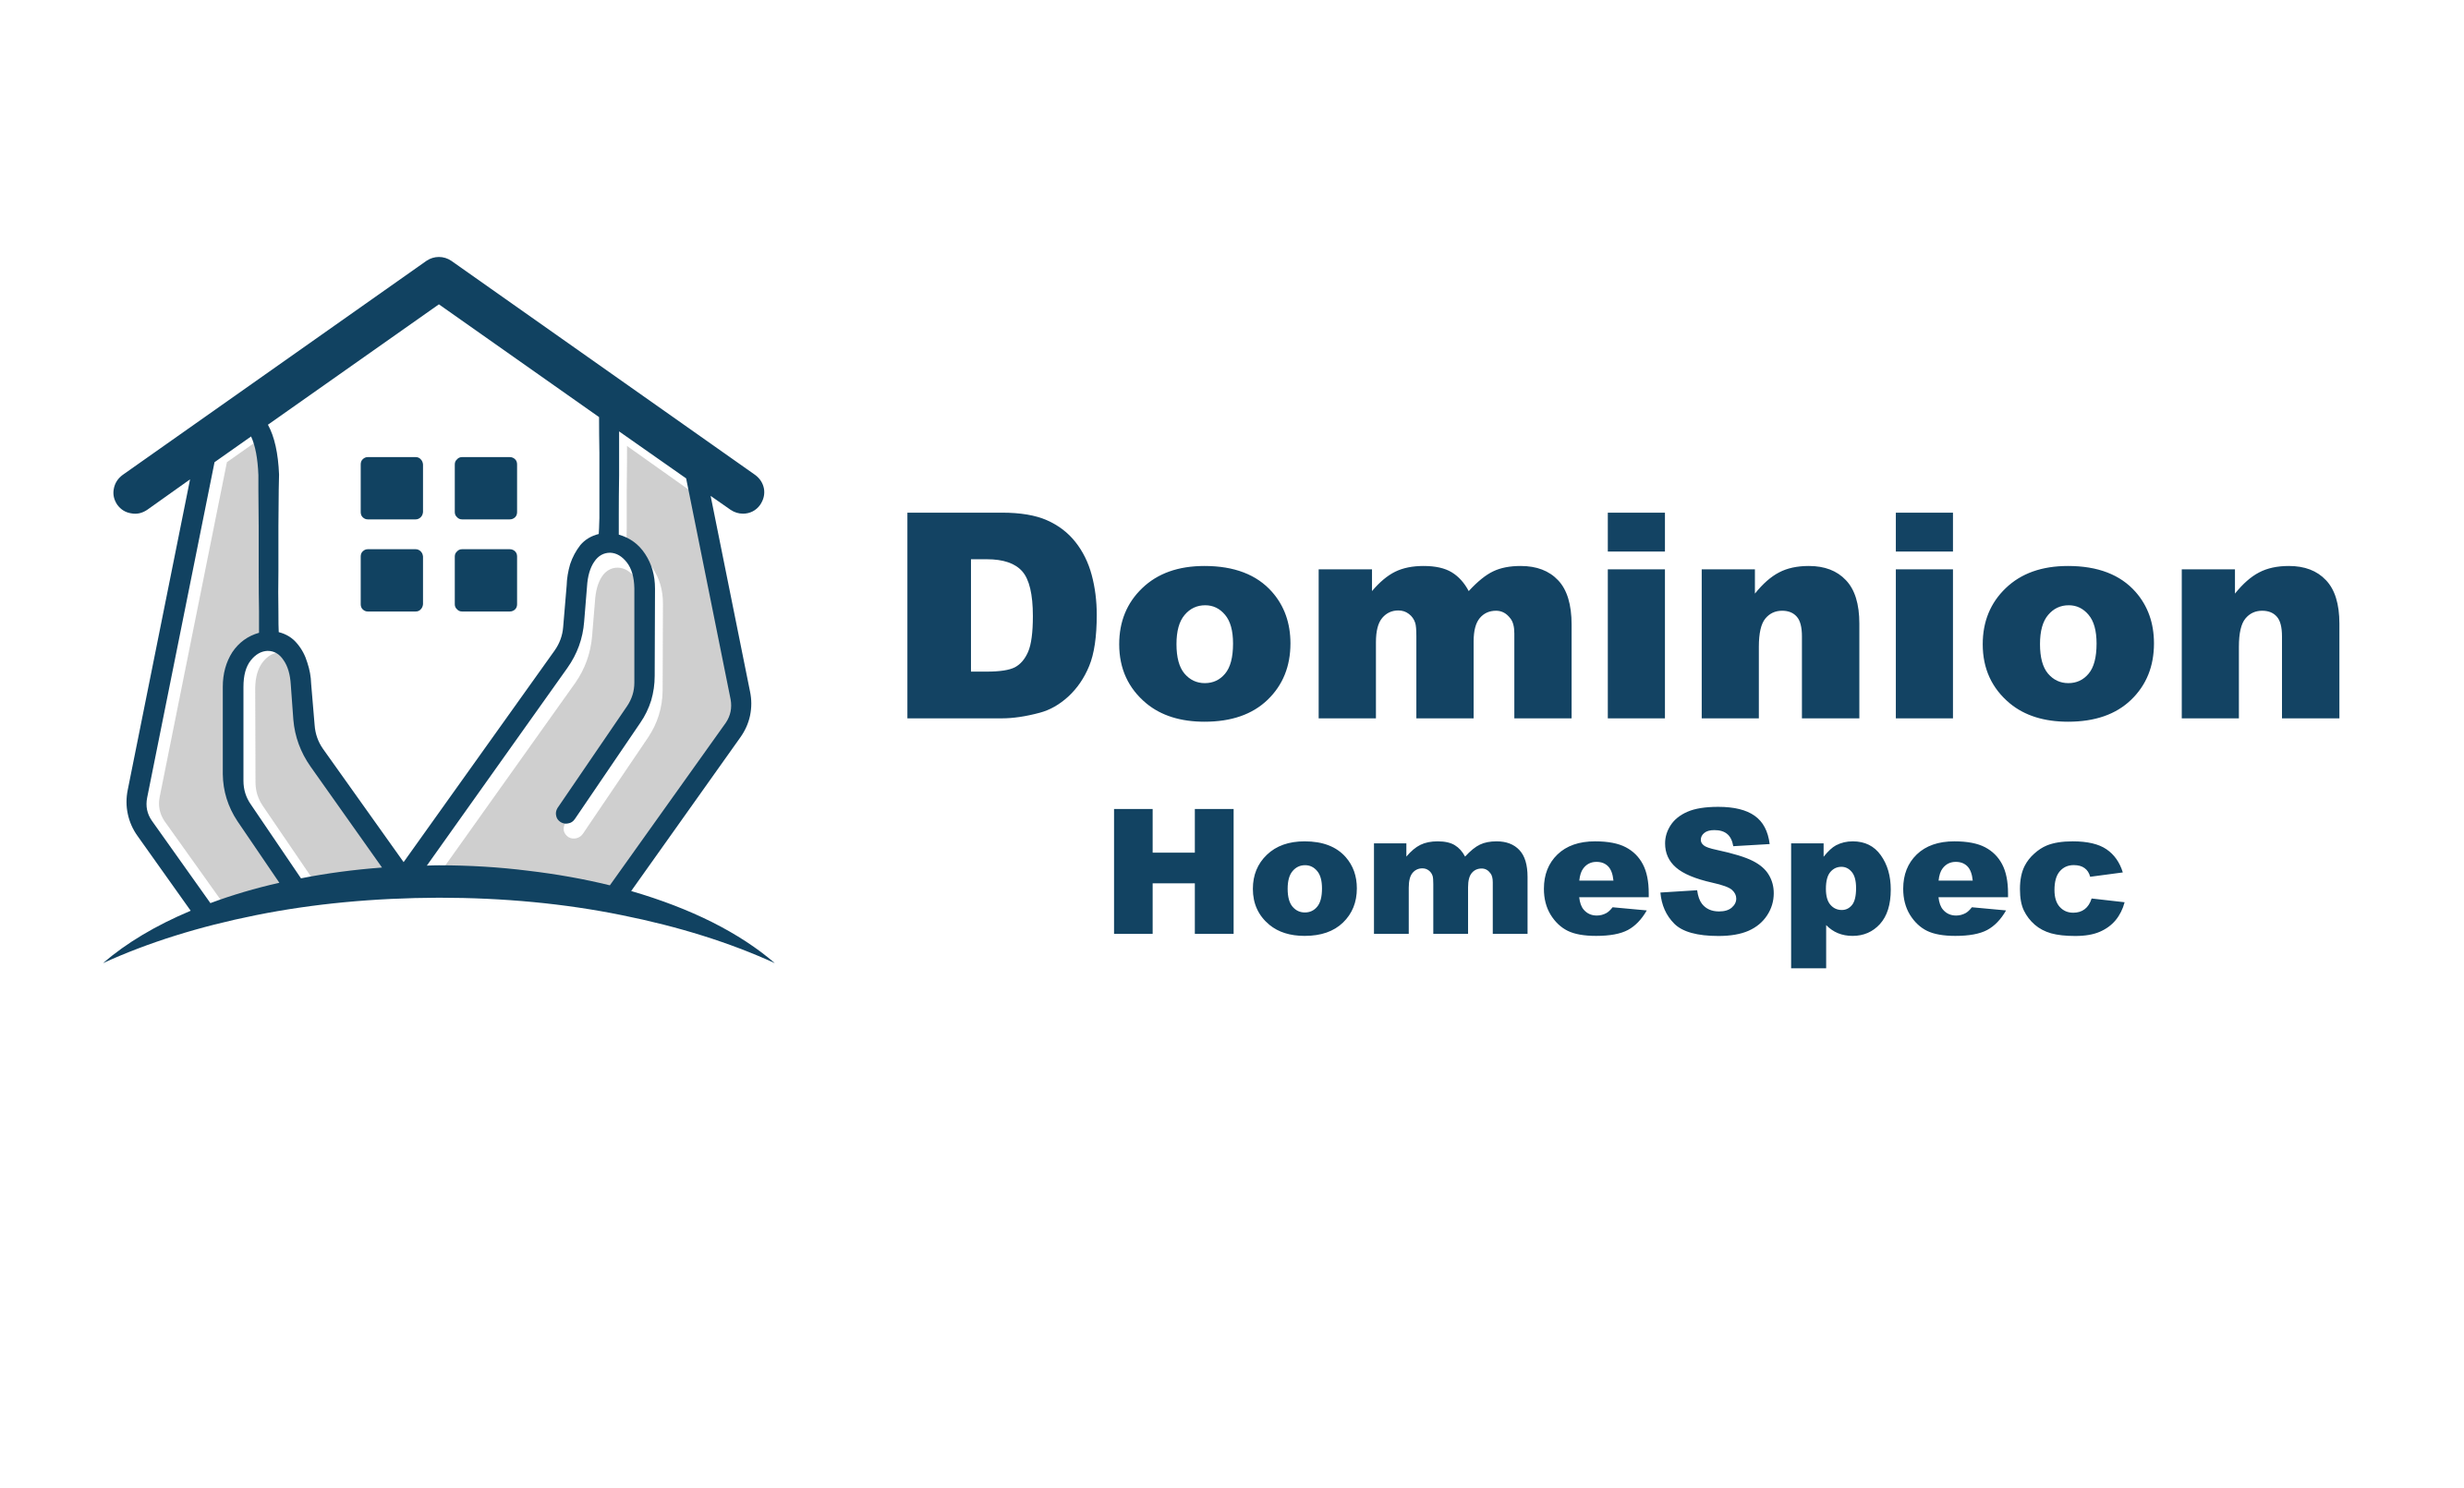 Dominion HomeSpec, LLC - dominionhomespec.com